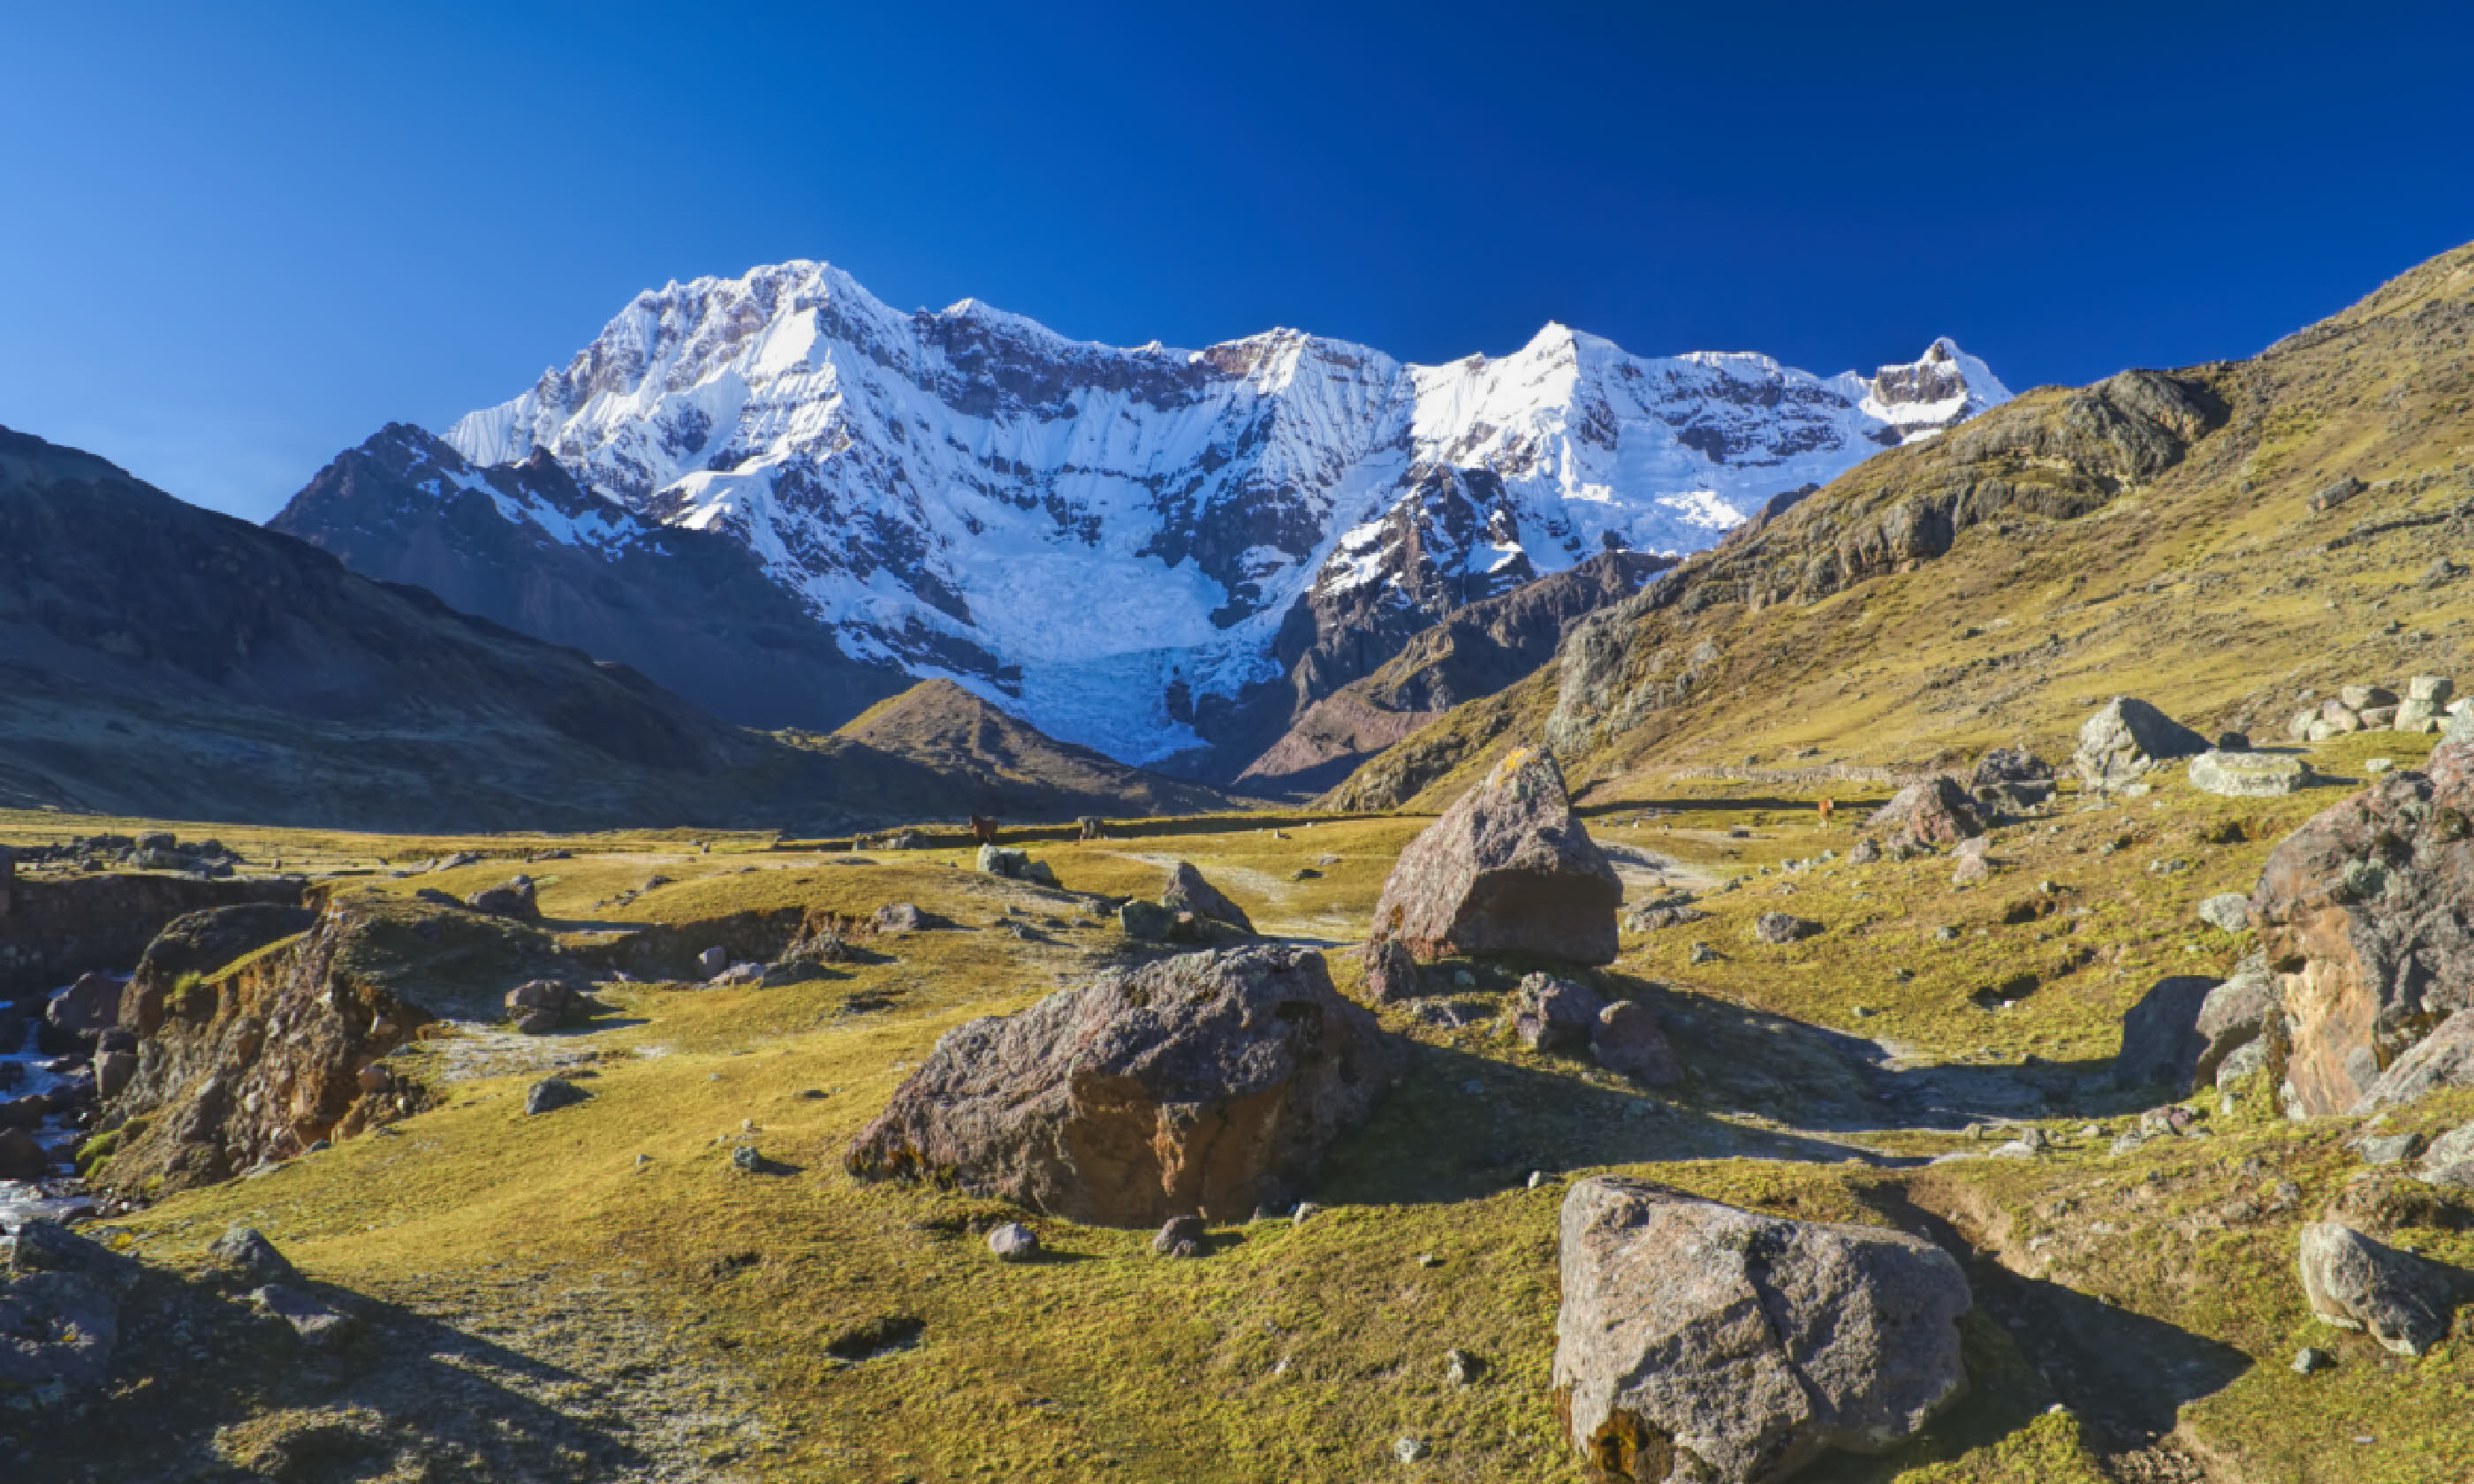 Peaks of Ausangate in Peru (Shutterstock)